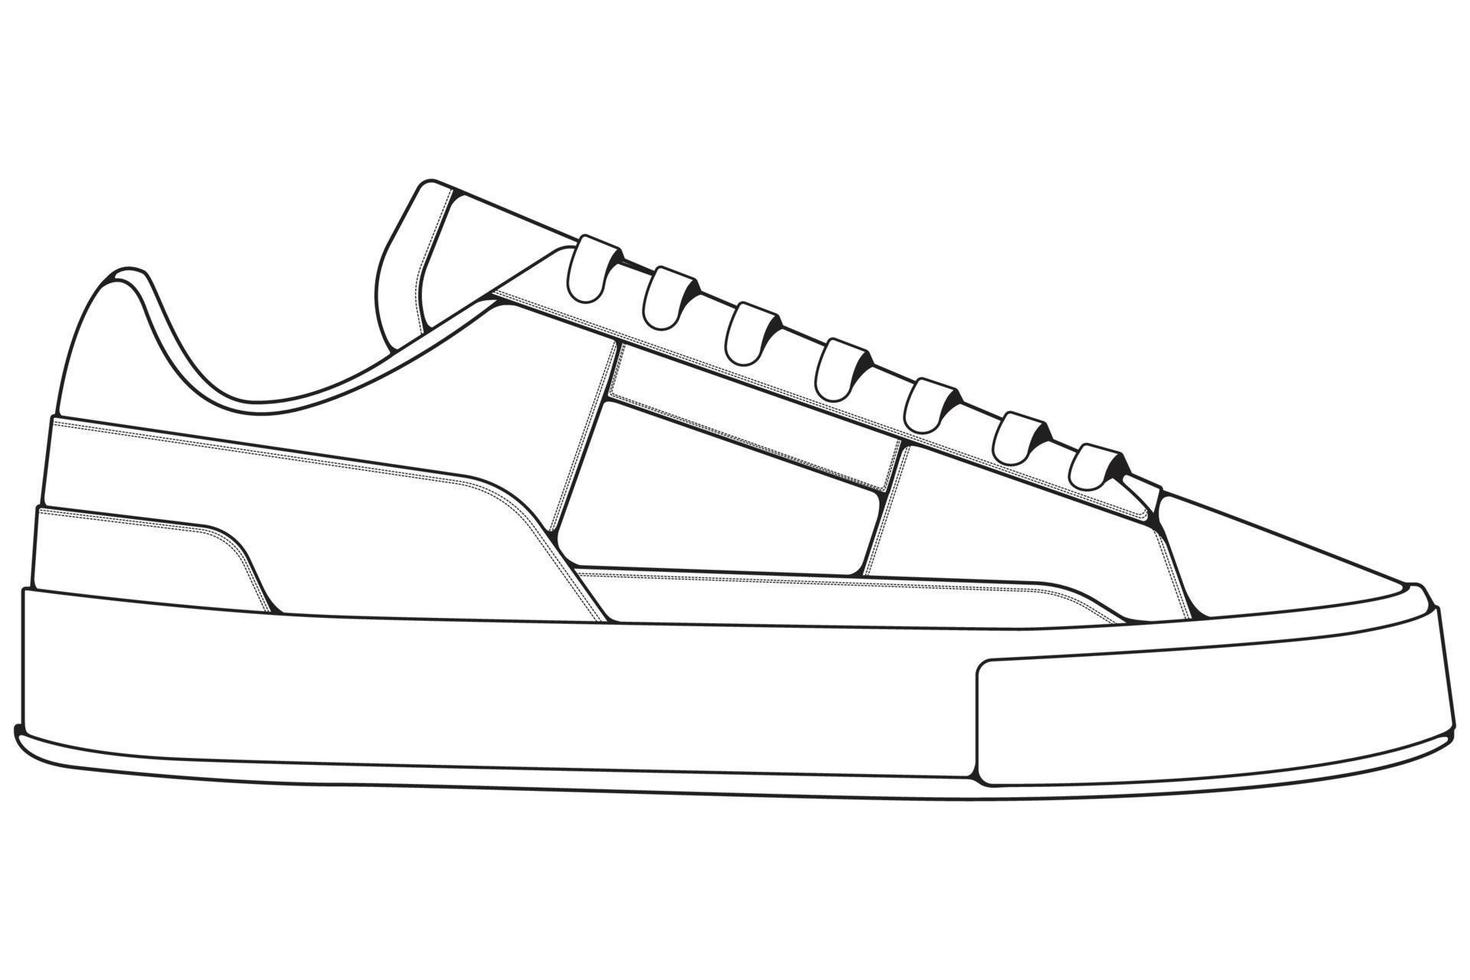 delinear zapatillas geniales. vector de dibujo de contorno de zapatillas de deporte, zapatillas de deporte dibujadas en un estilo de boceto.